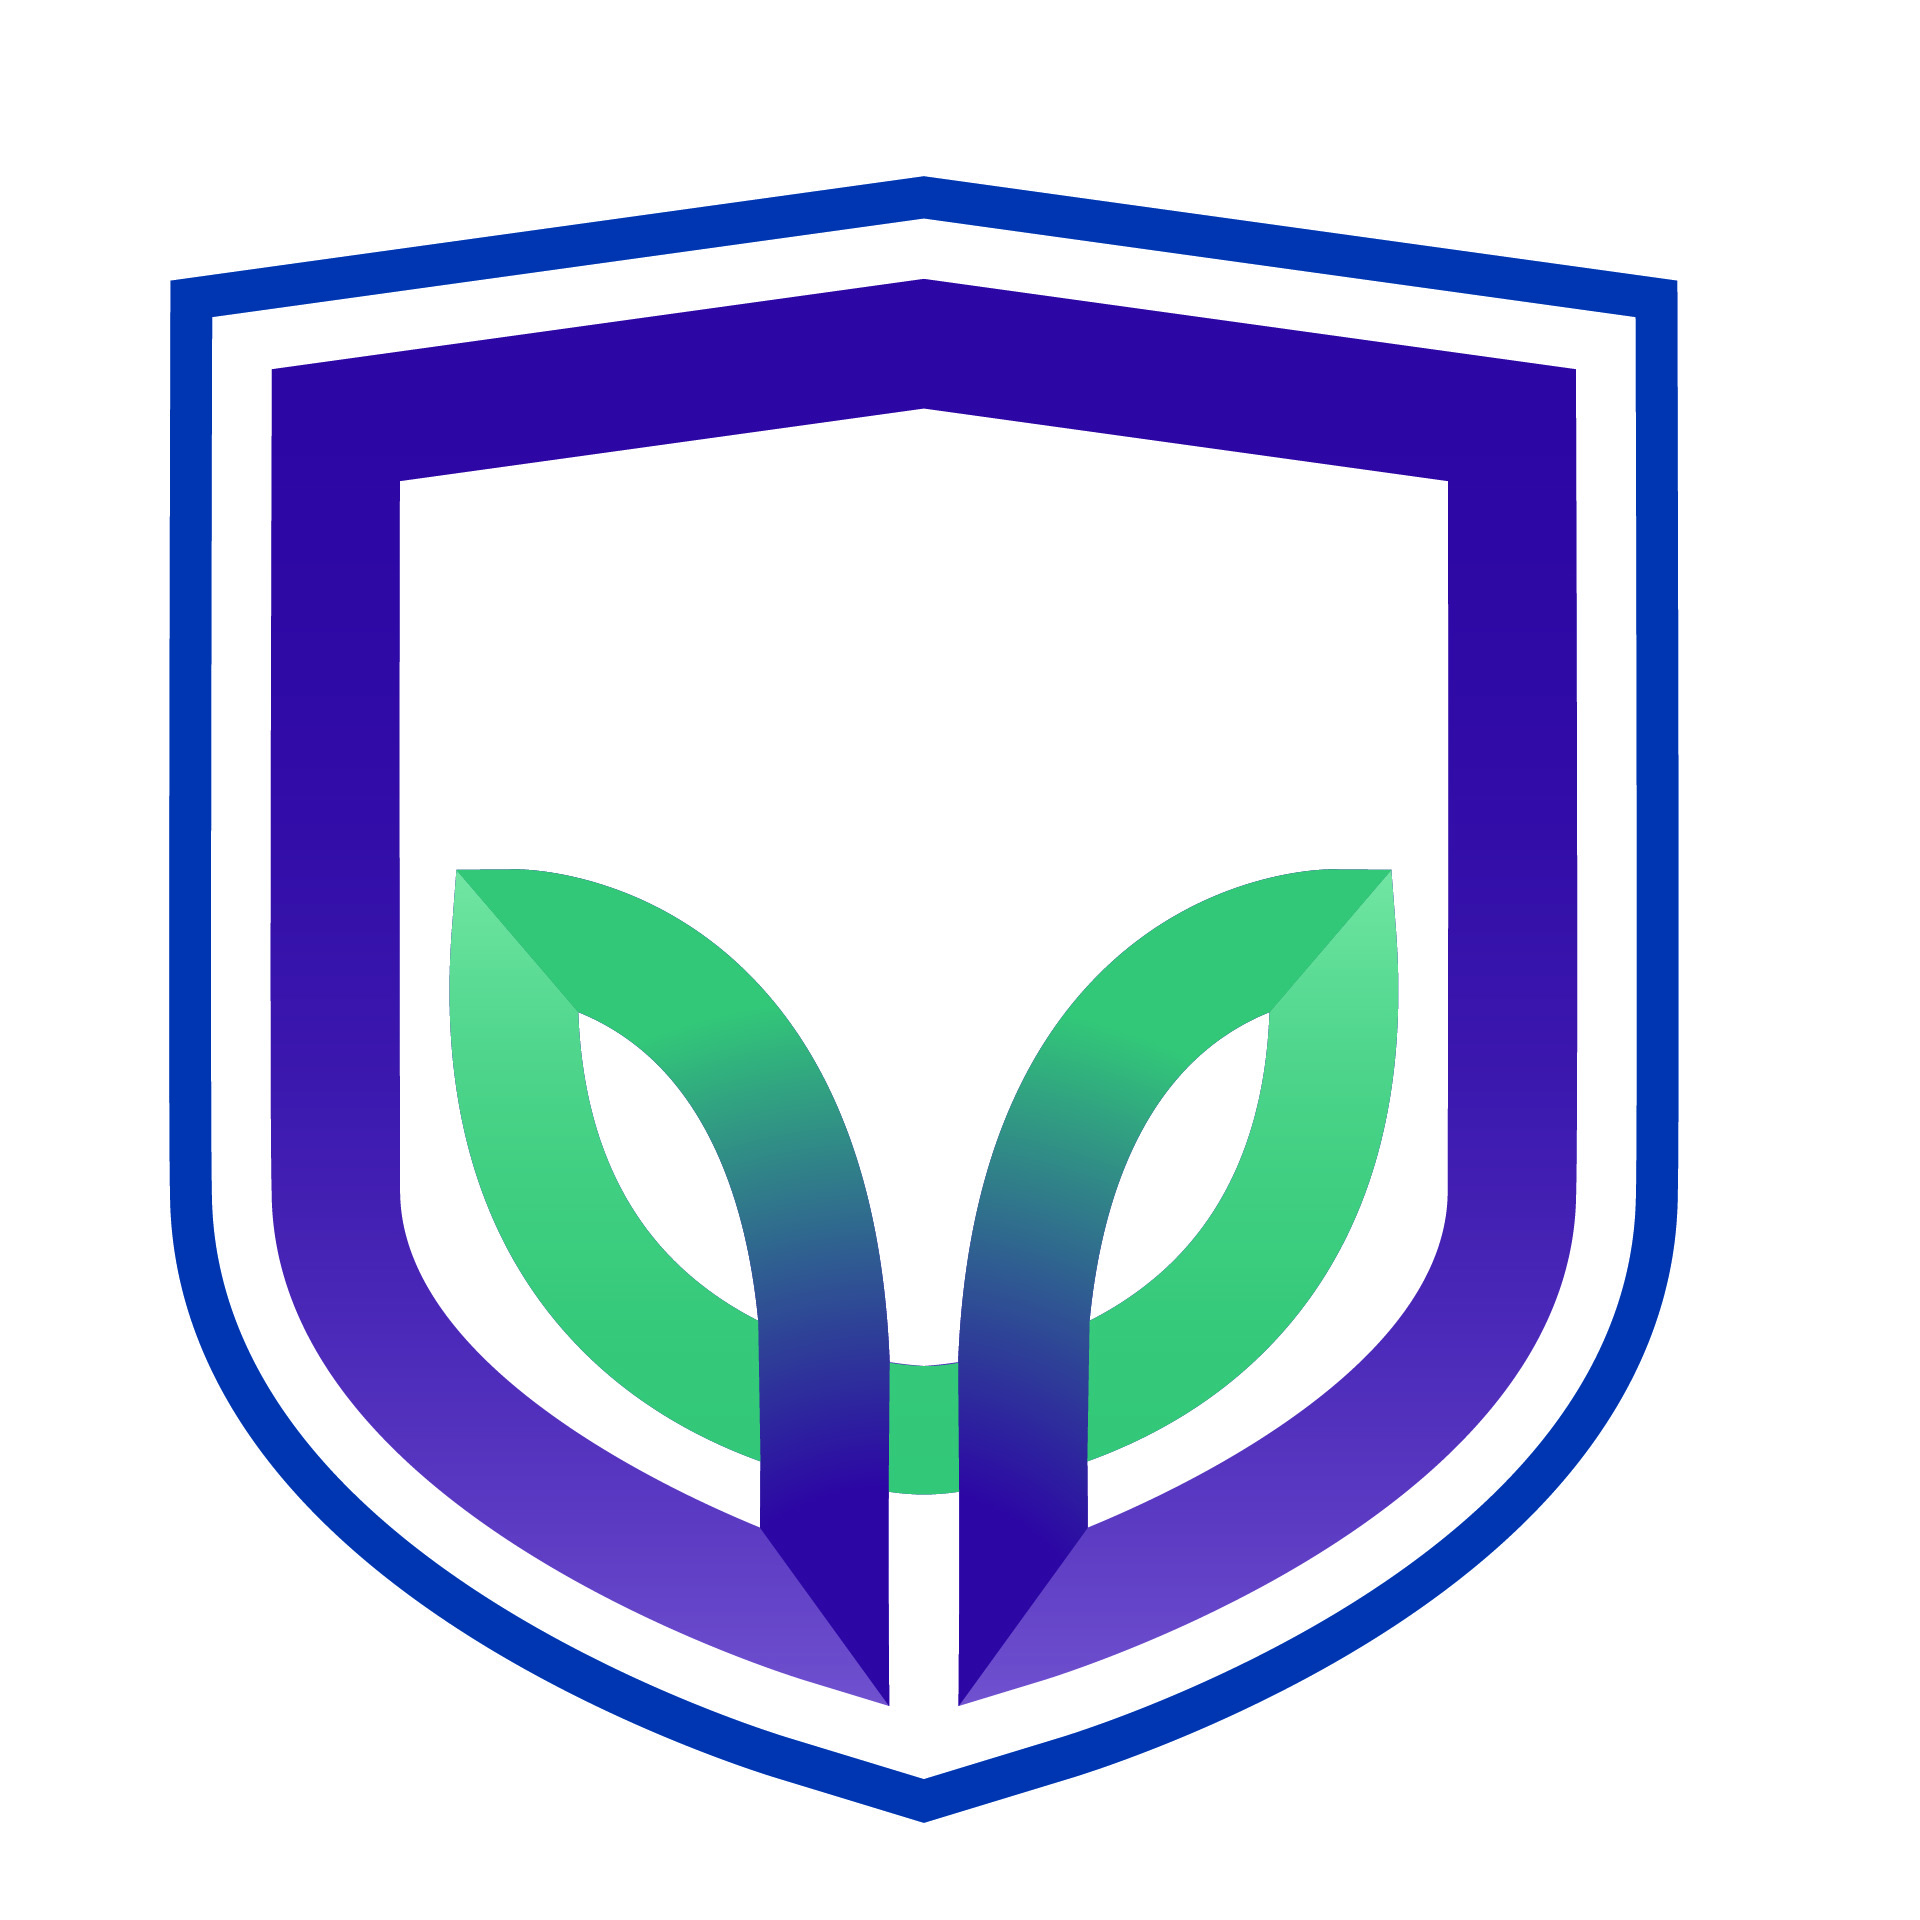 RVRC_logo_shield